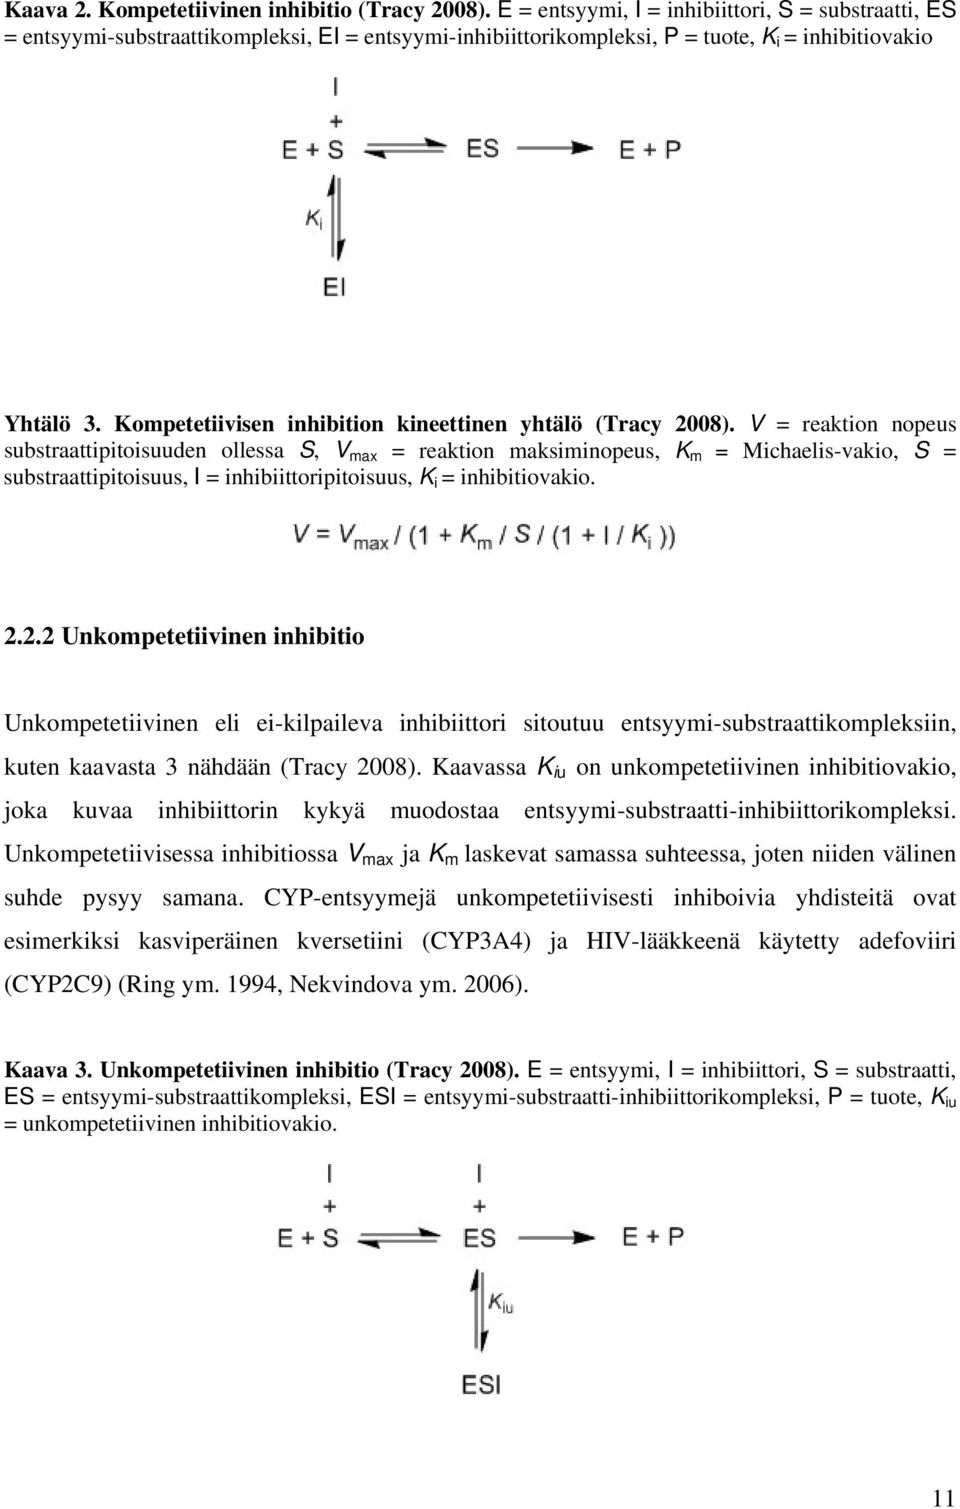 Kompetetiivisen inhibition kineettinen yhtälö (Tracy 2008).